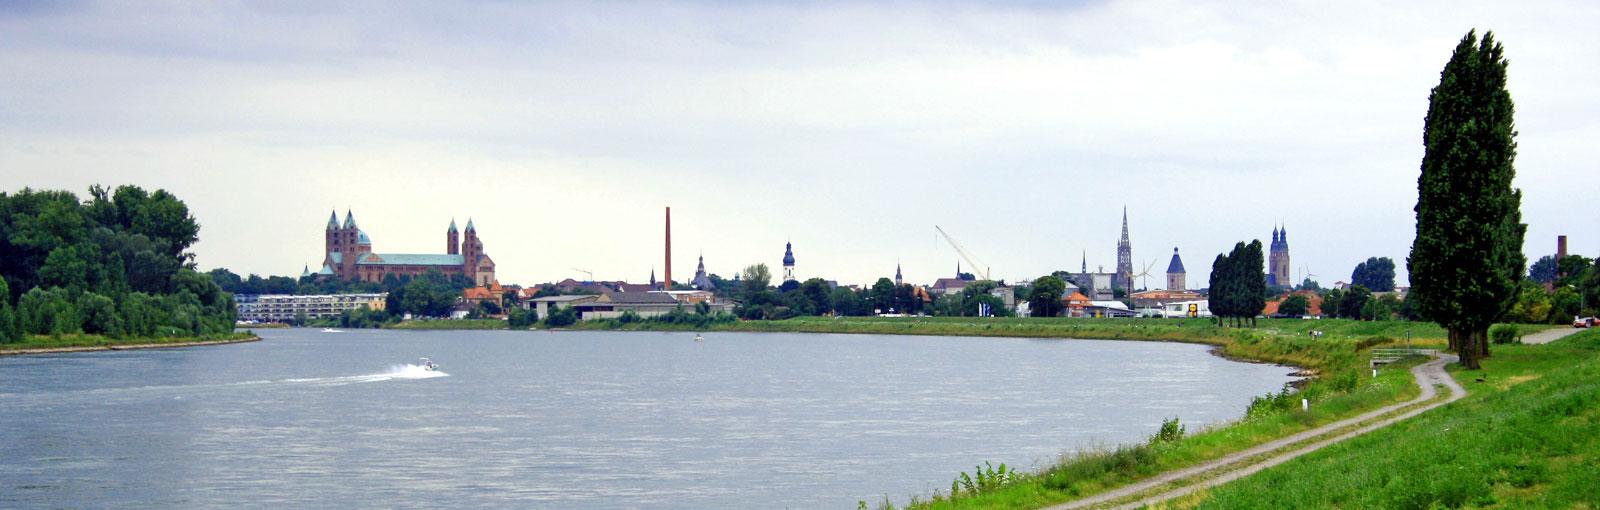 Speyer vom Rhein aus gesehen